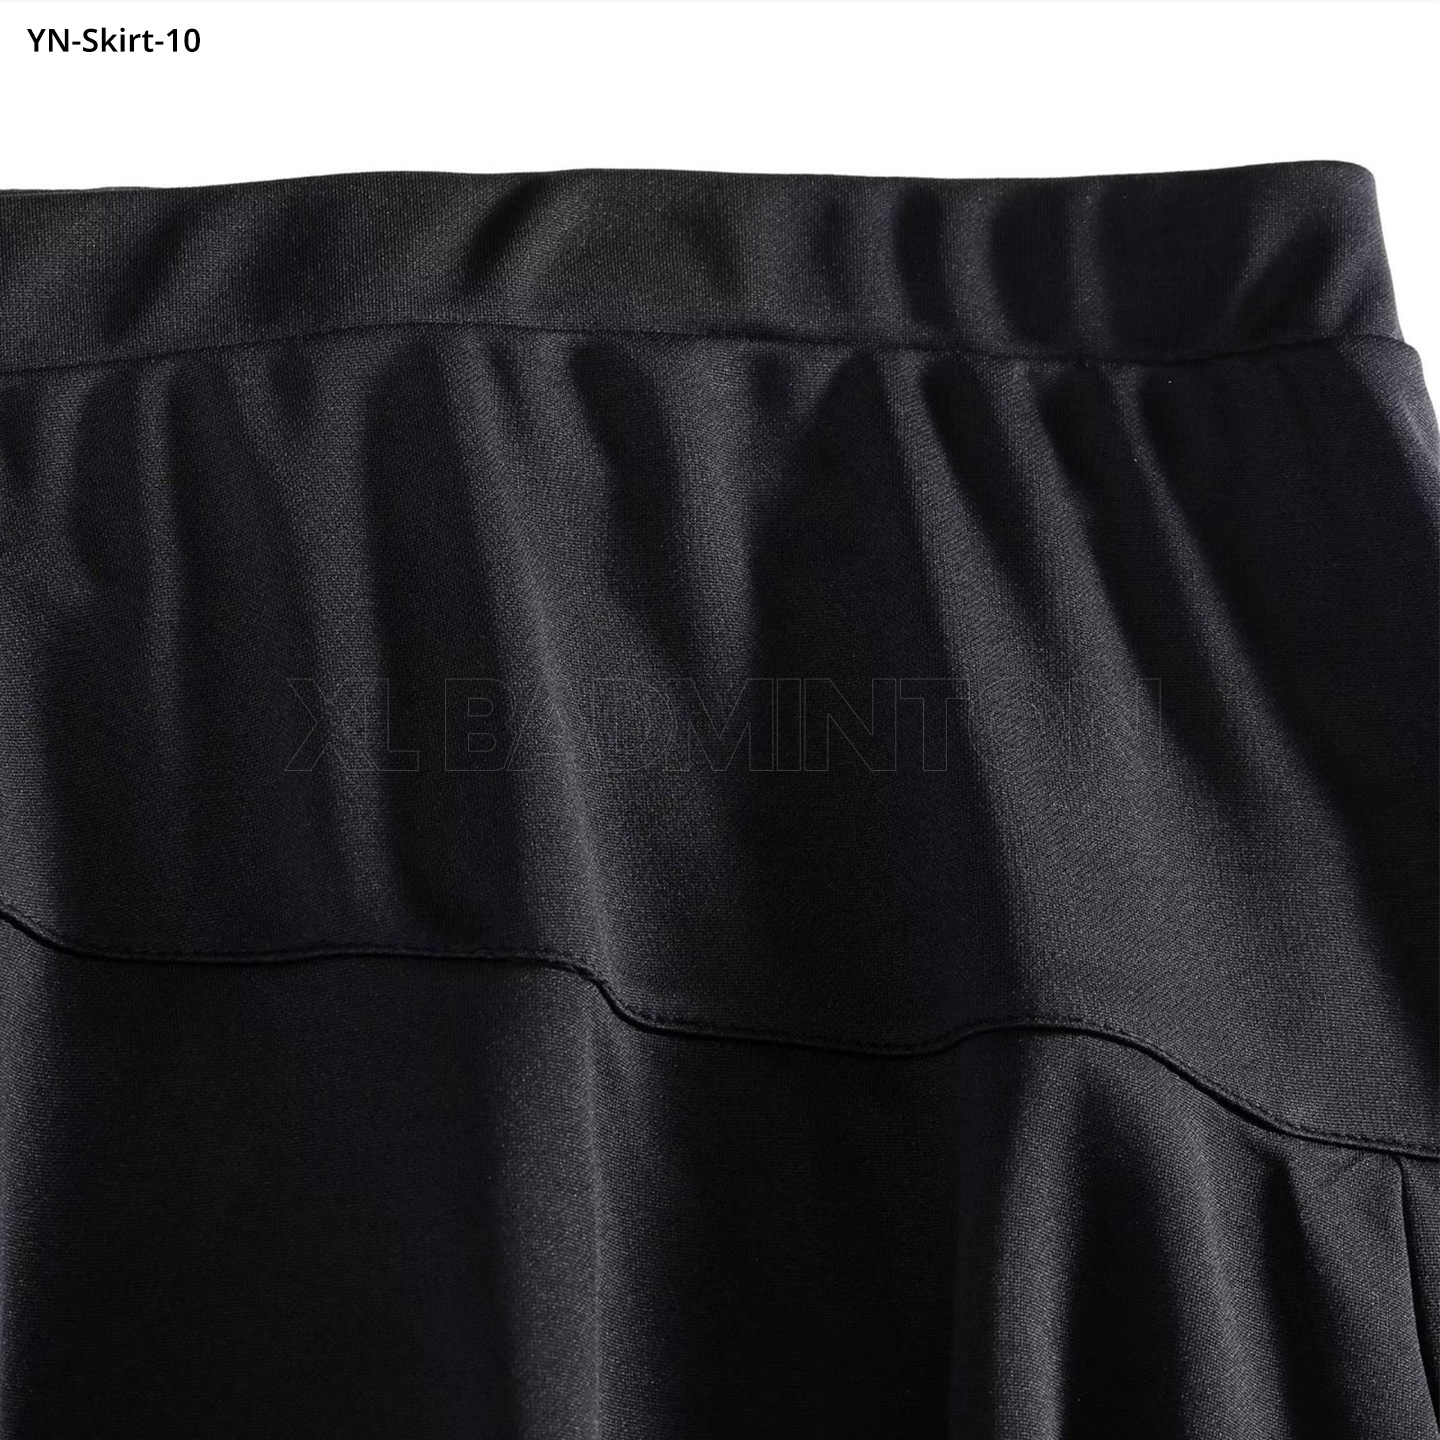 yn-skirt-10-black-4